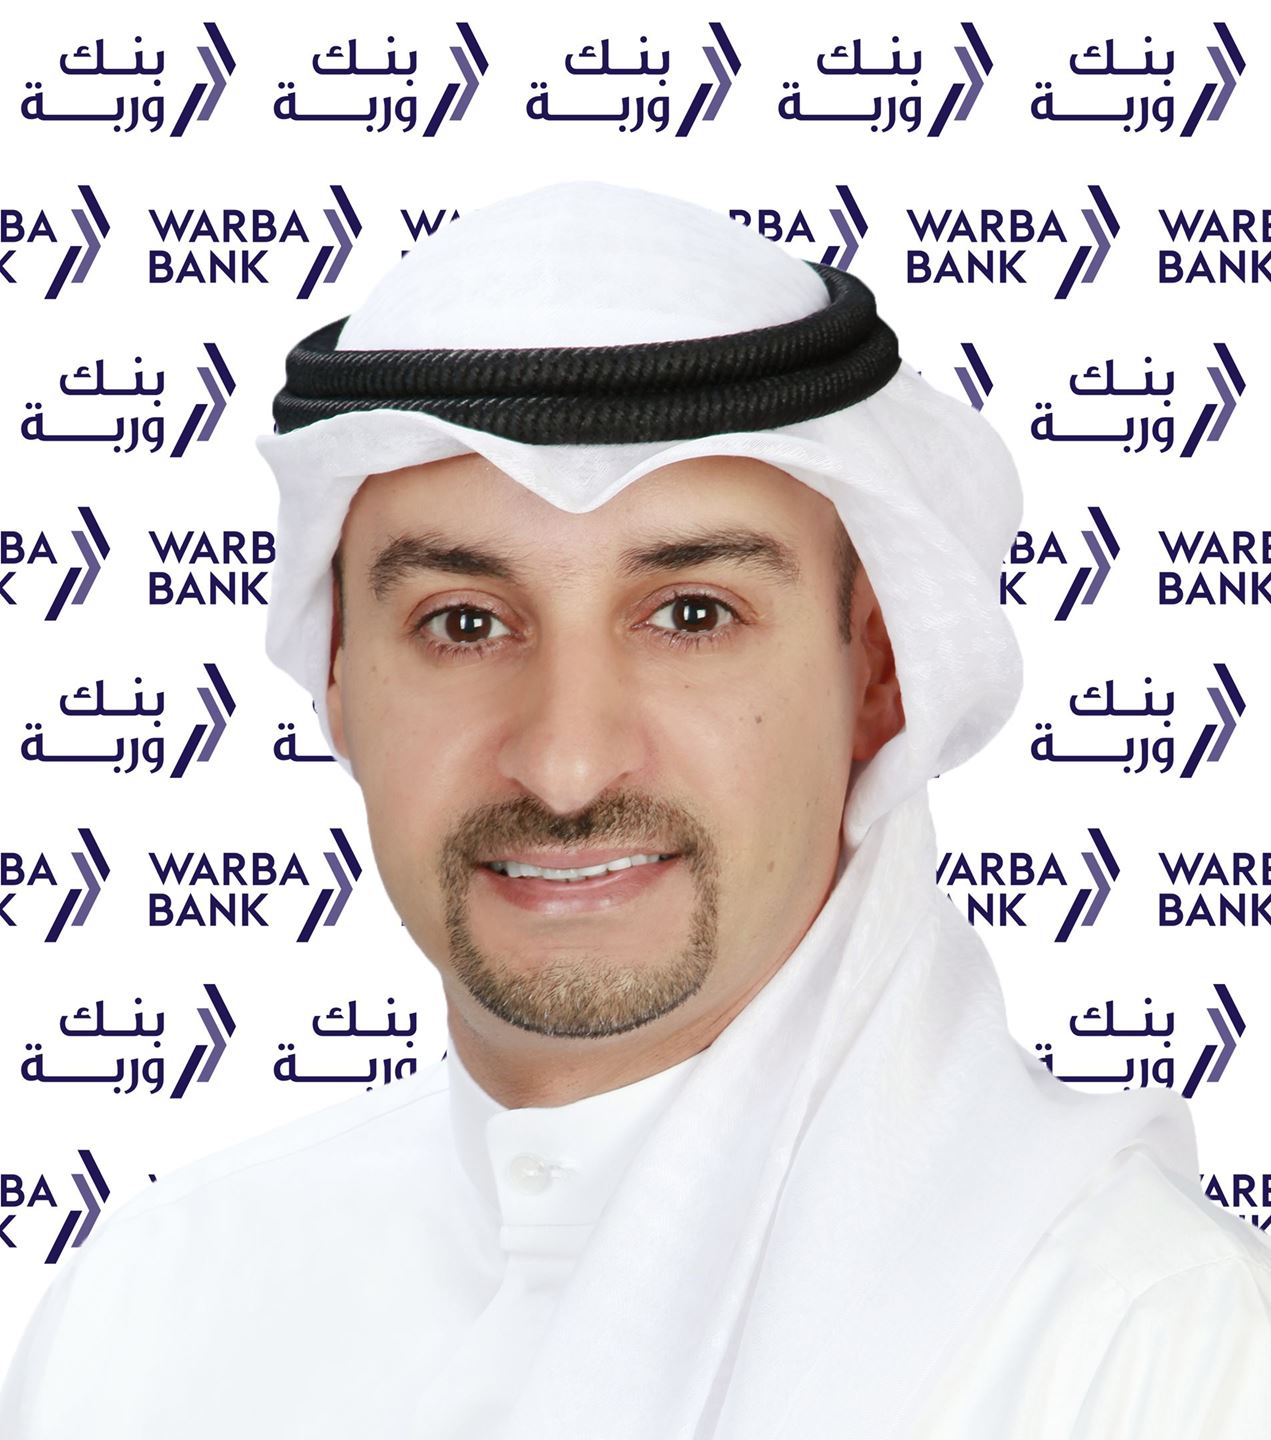 السيد أيمن سالم المطيري  -  المدير التنفيذي للاتصال المؤسسي  لبنك وربة